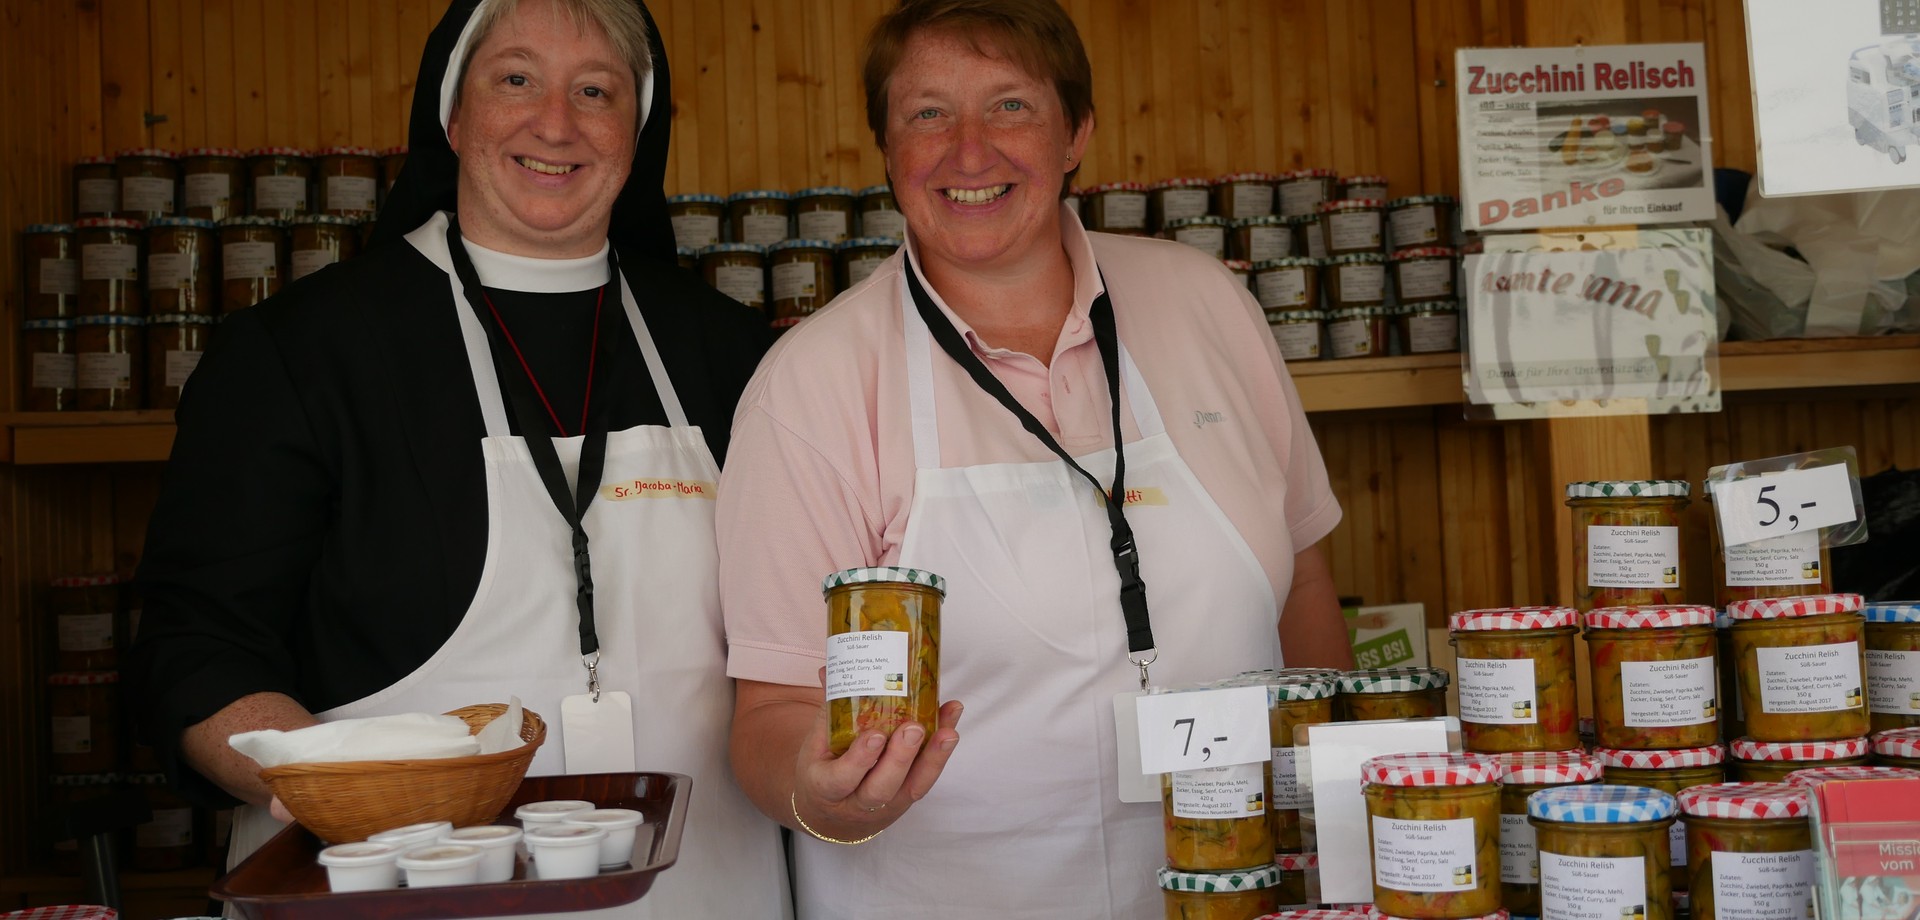 Auf dem Foto sieht man Schwester Jacoba-Maria und eine Ehrenamtliche, die das Zucchini-Relish präsentieren.

Foto: LWL